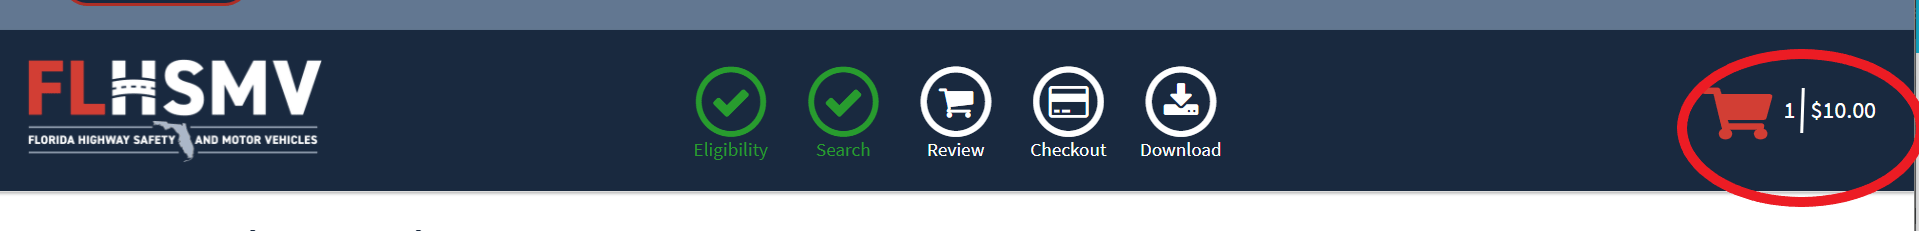 Screenshot-shopping-cart-FLHSMV-crash-portal